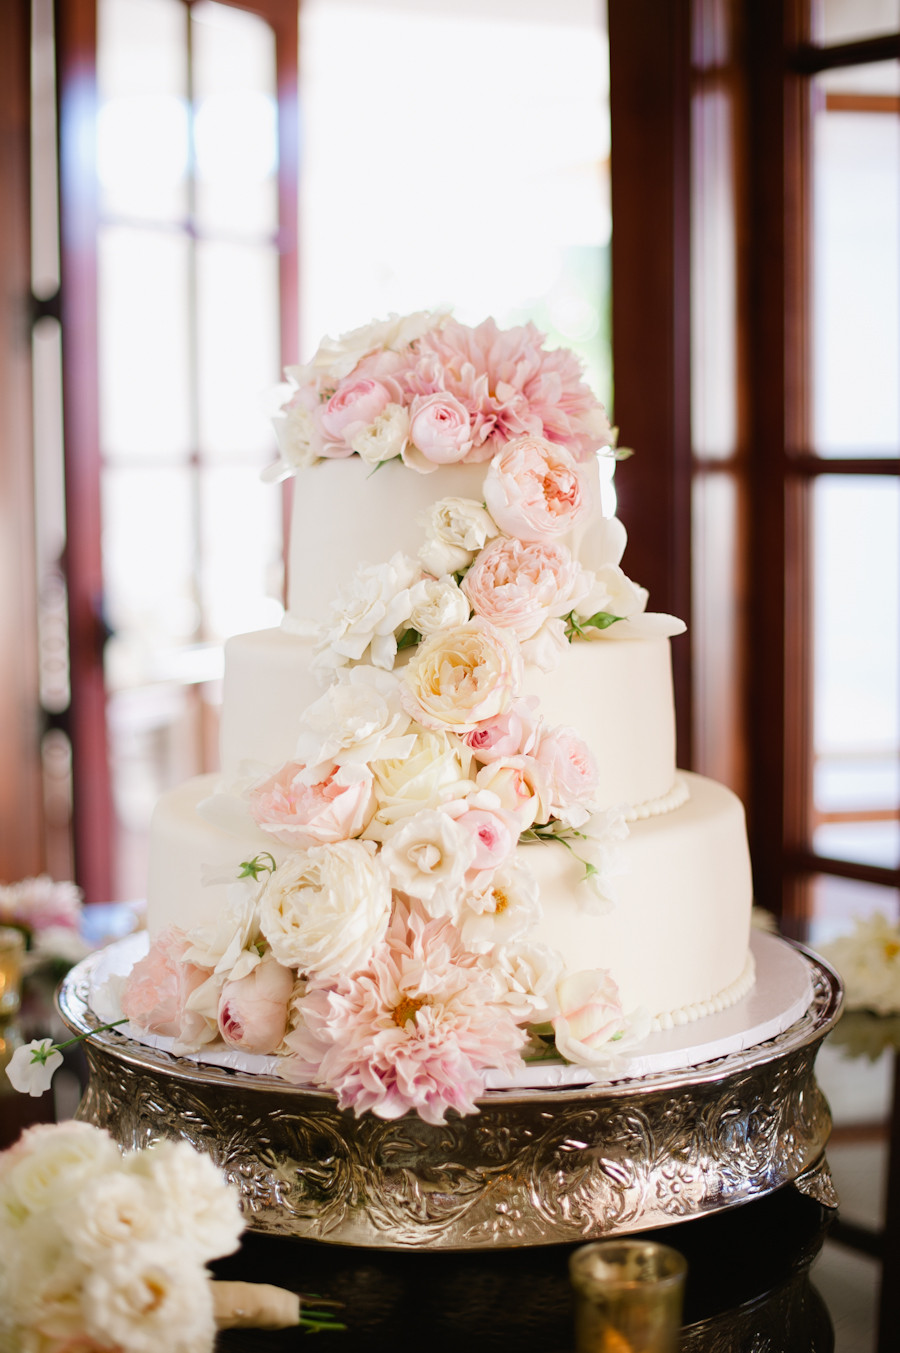 Wedding Cake With Flowers
 Wedding Cake with Fresh Flowers Elizabeth Anne Designs